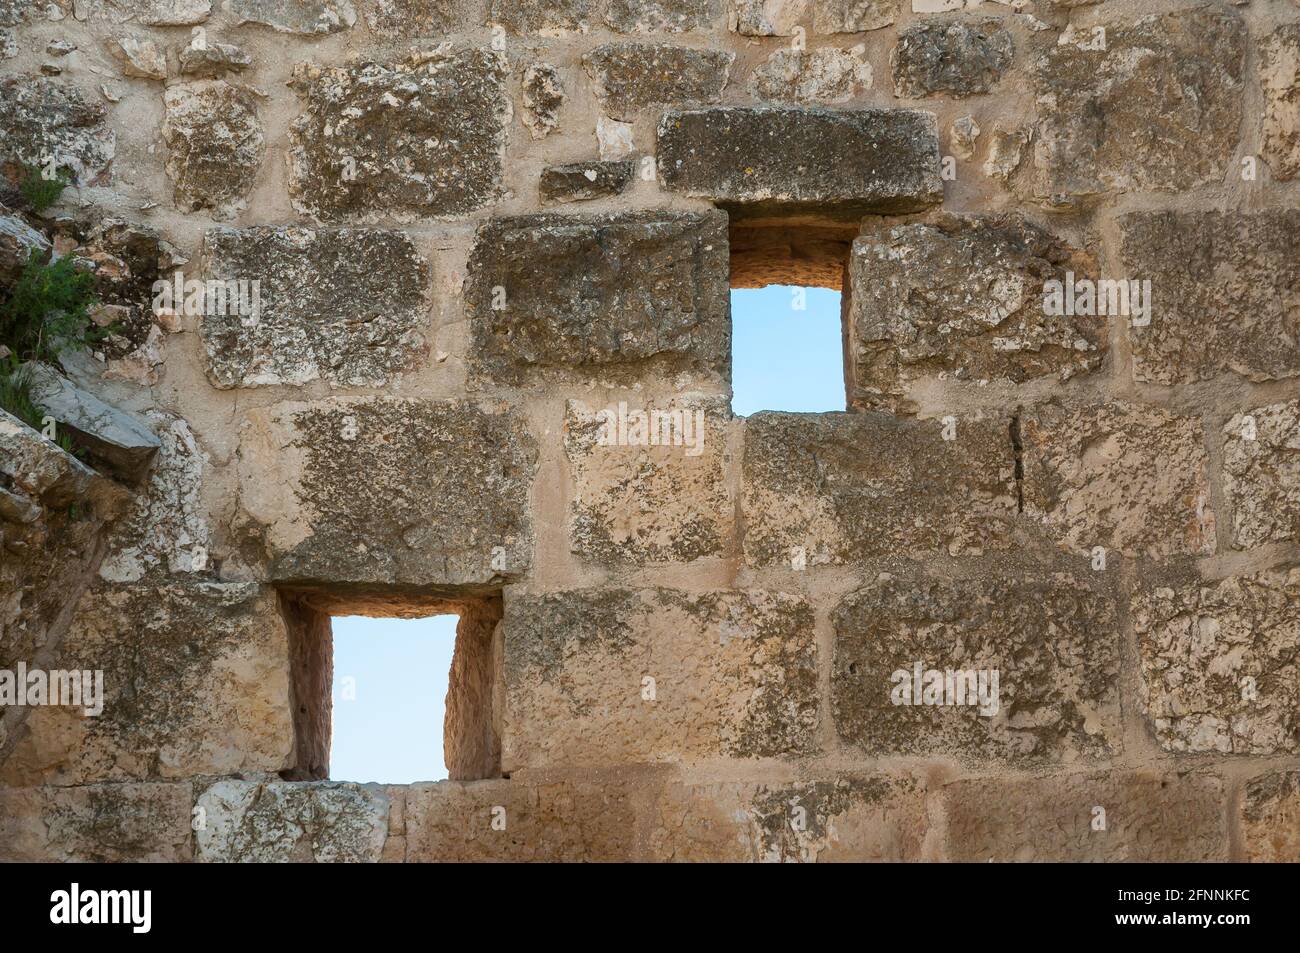 Ruins of crusader castle, Ajlun, Jordan Stock Photo